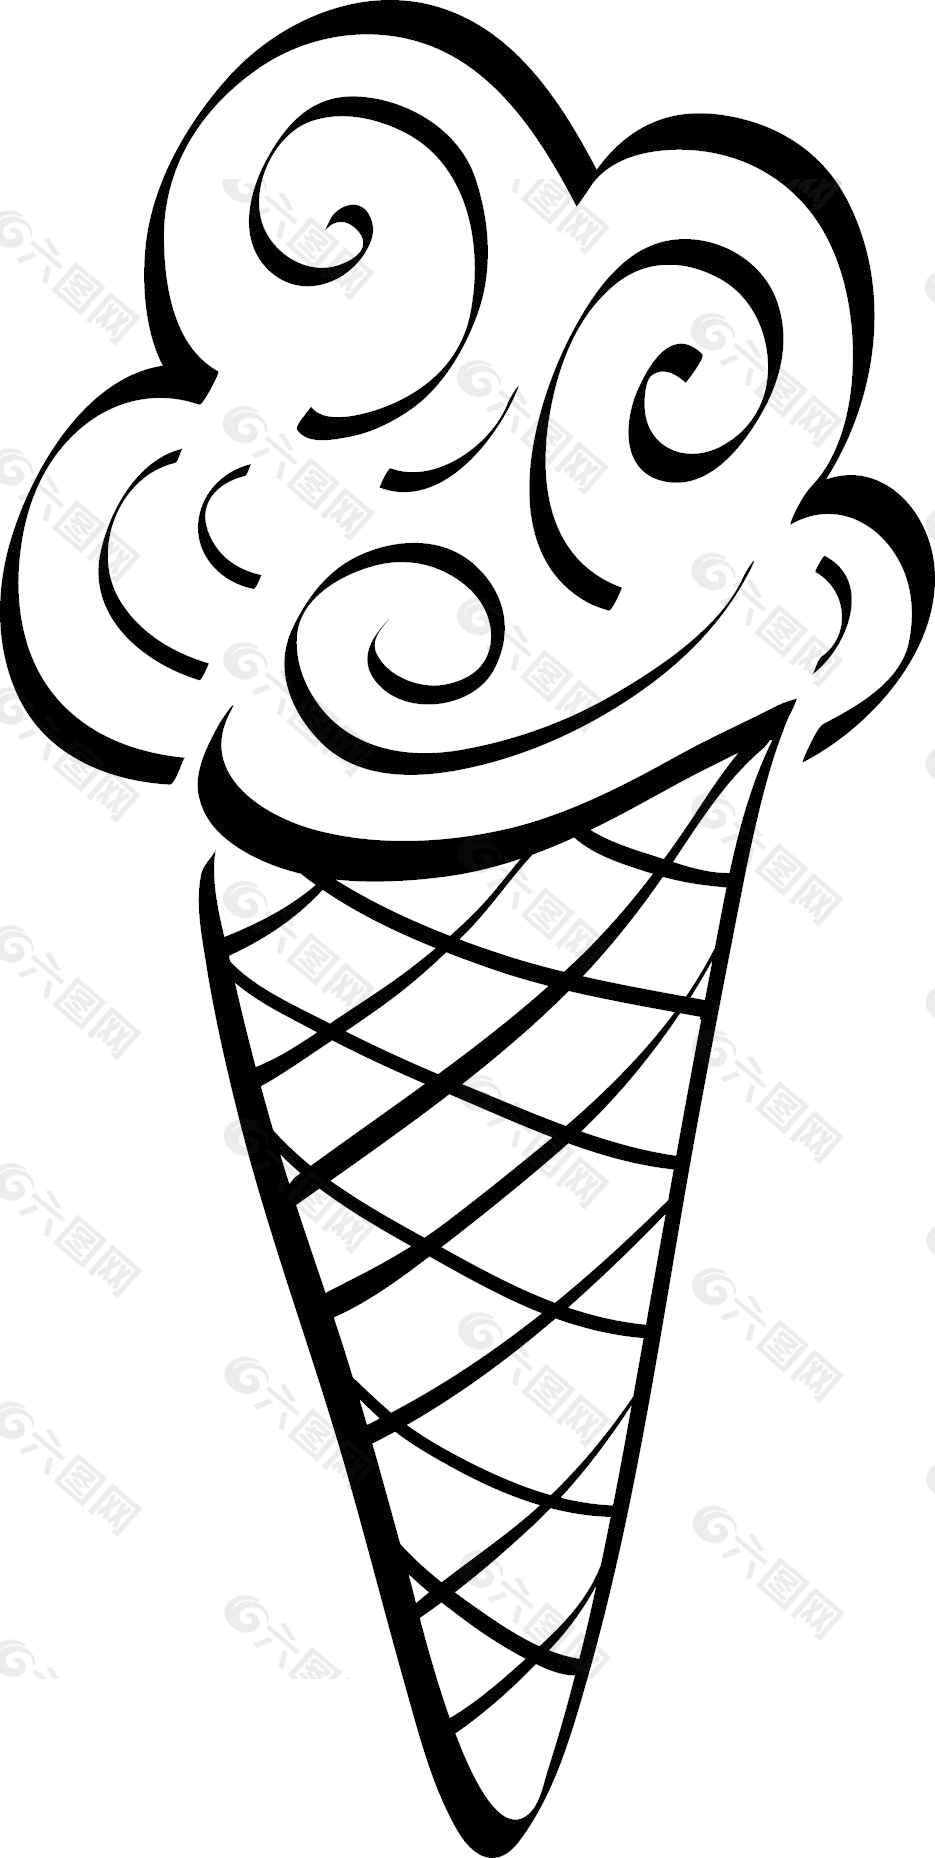 动漫冰淇淋02矢量